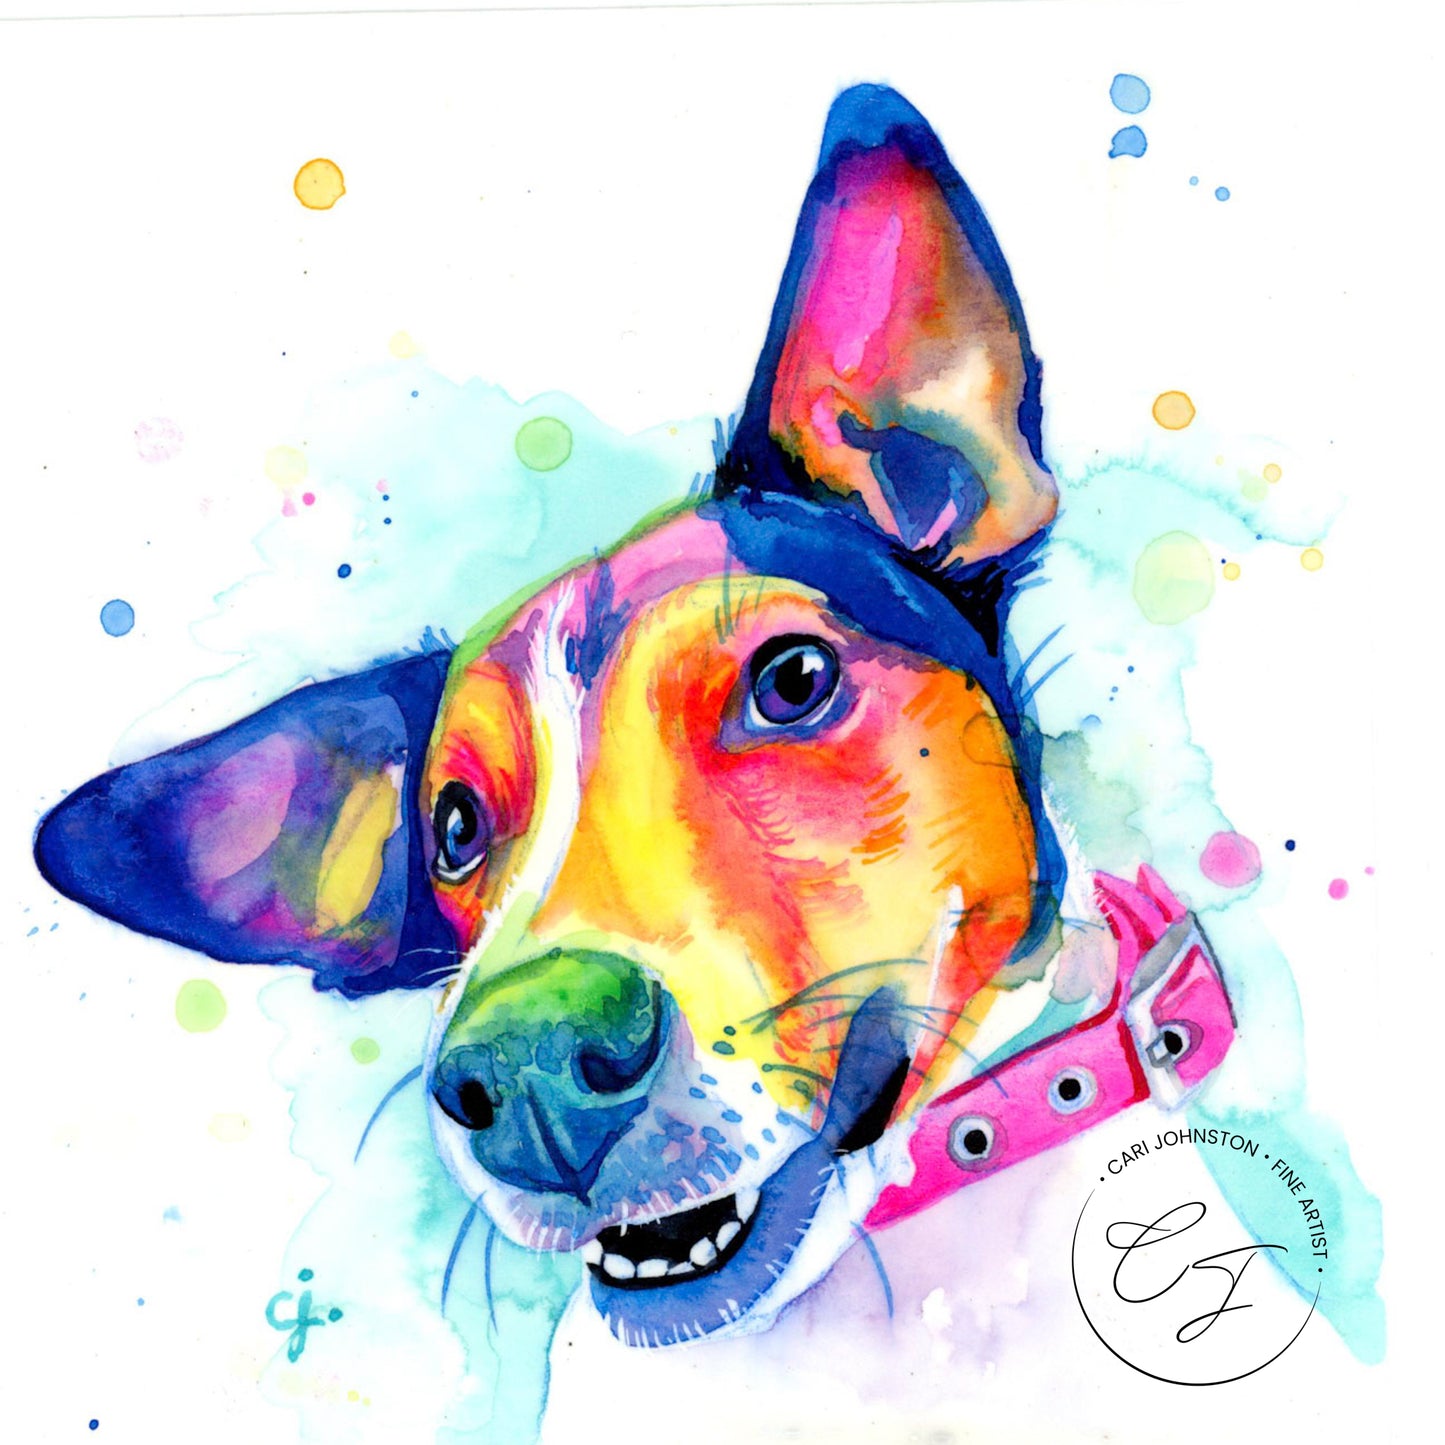 Jack Russel Terrier Painting